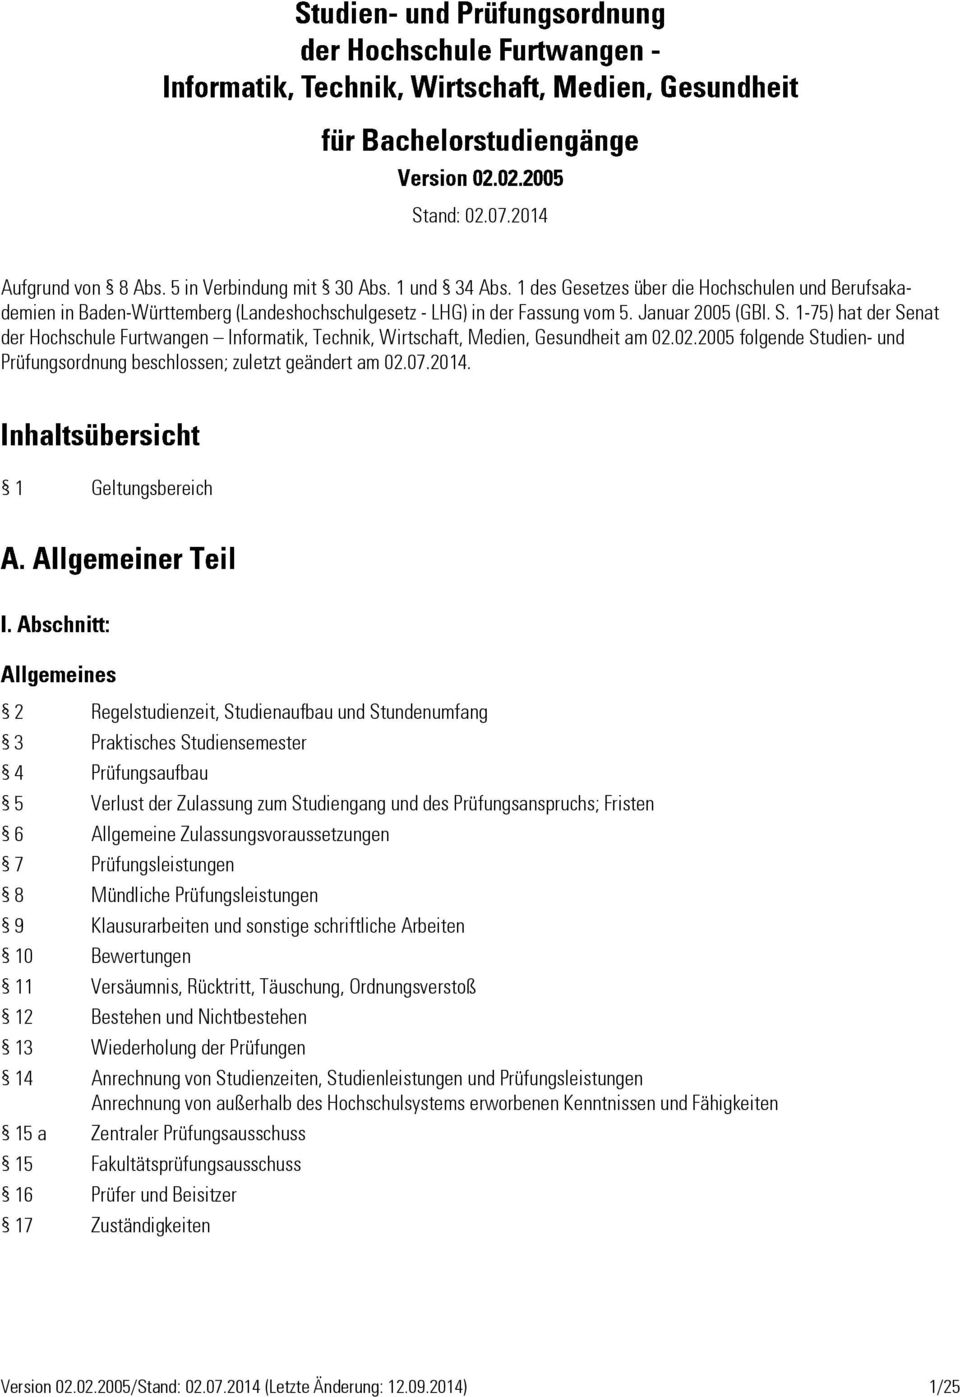 1-75) hat der Senat der Hochschule Furtwangen Informatik, Technik, Wirtschaft, Medien, Gesundheit am 02.02.2005 folgende Studien- und Prüfungsordnung beschlossen; zuletzt geändert am 02.07.2014.